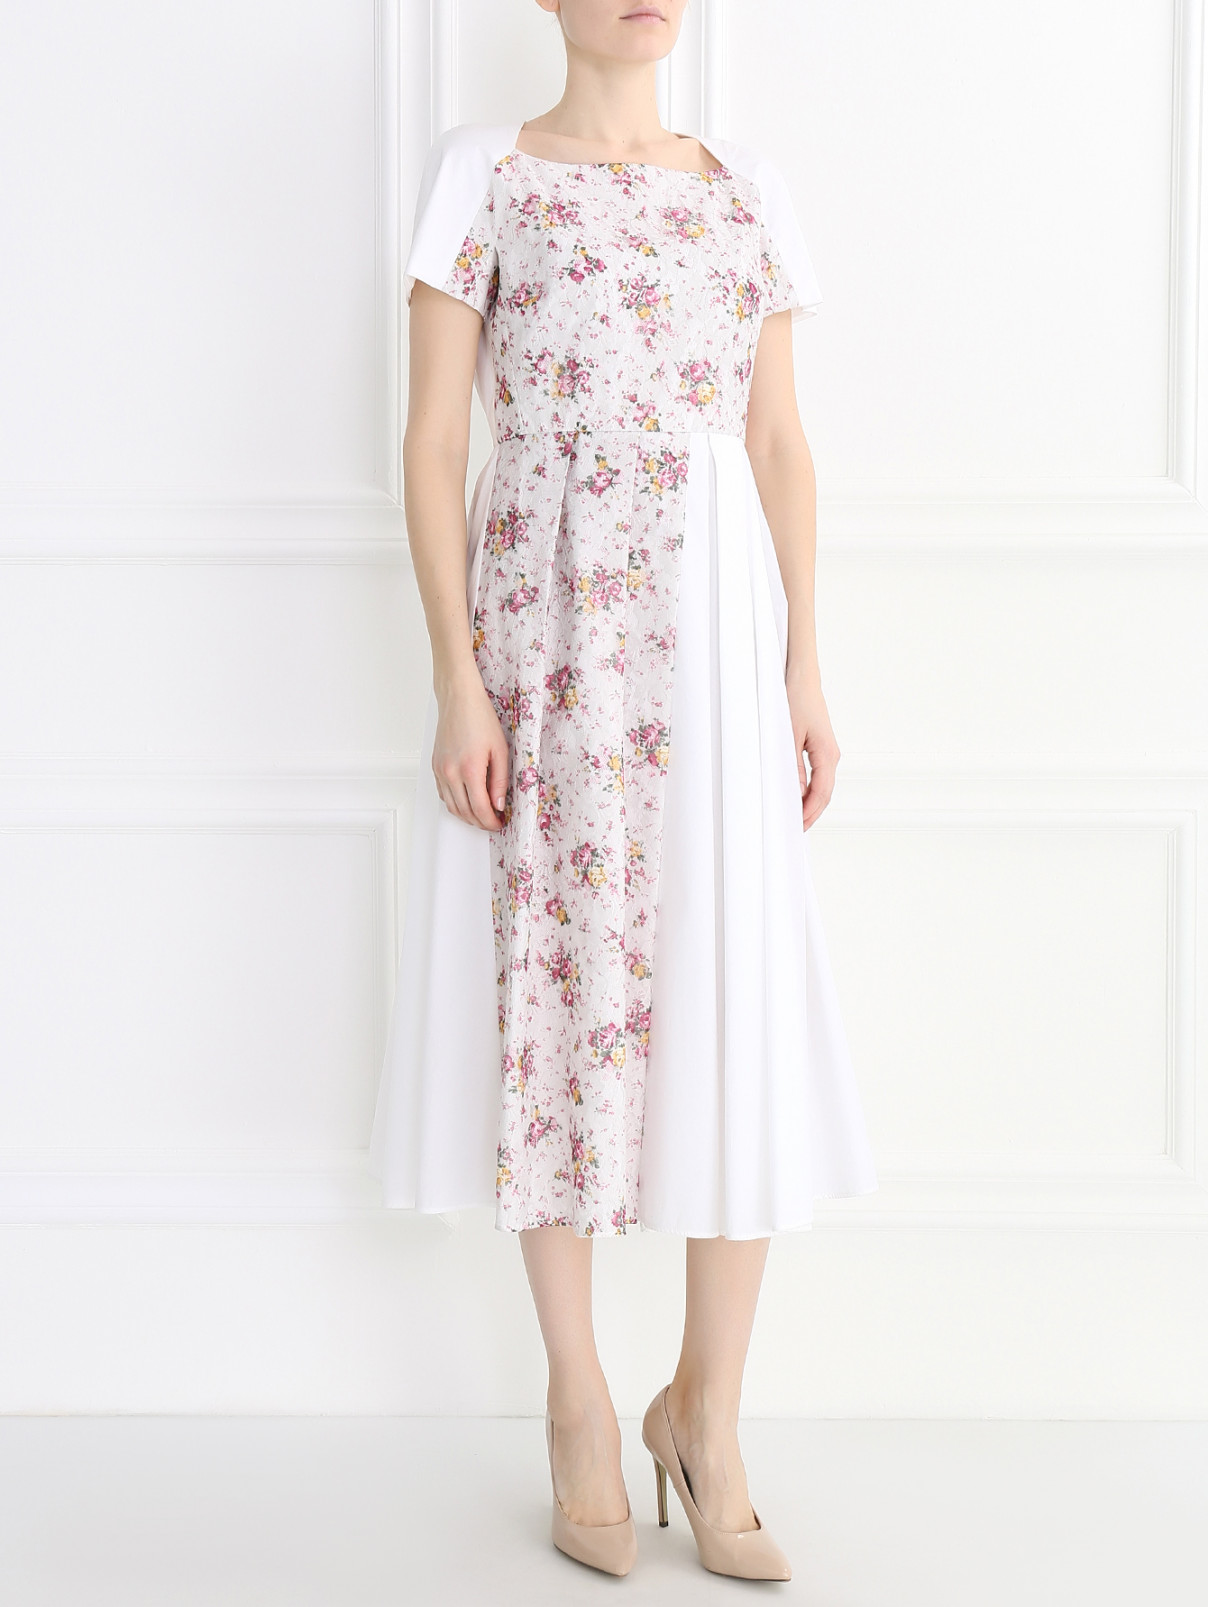 Платье-миди из хлопка с цветочным узором и кружевной отделкой Antonio Marras  –  Модель Общий вид  – Цвет:  Белый